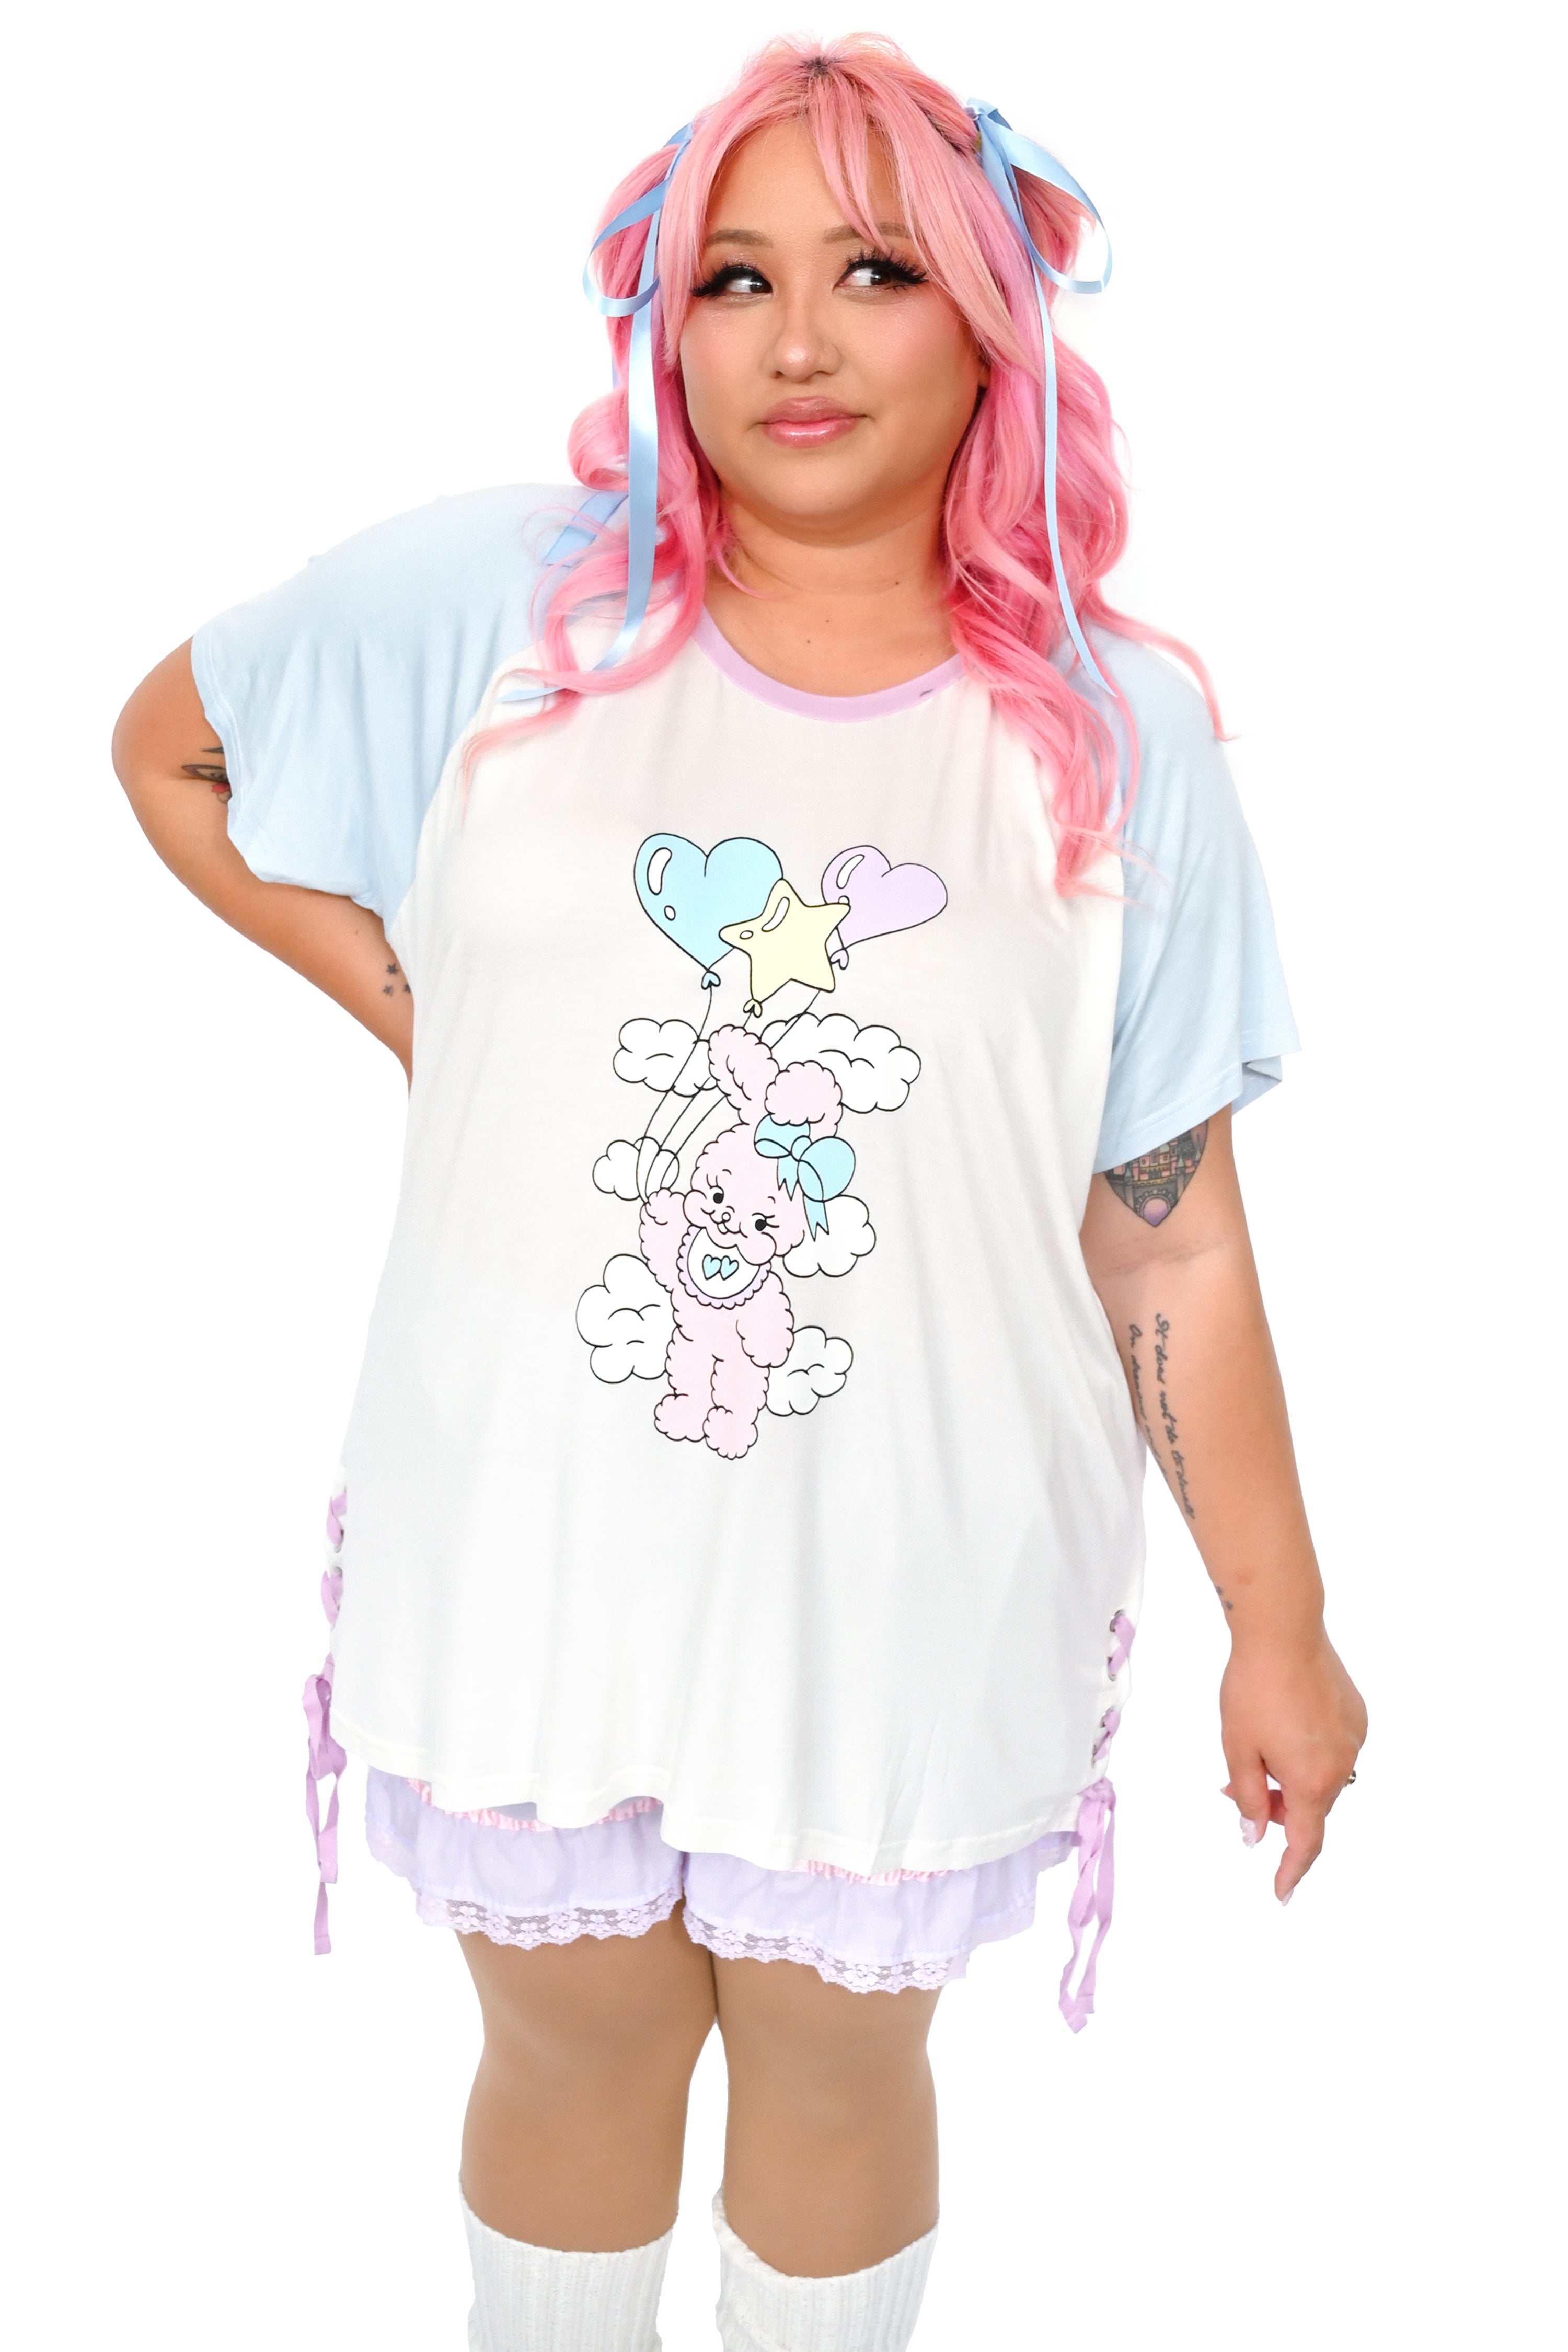 MilkySippyCup Balloon Bunny Tshirt